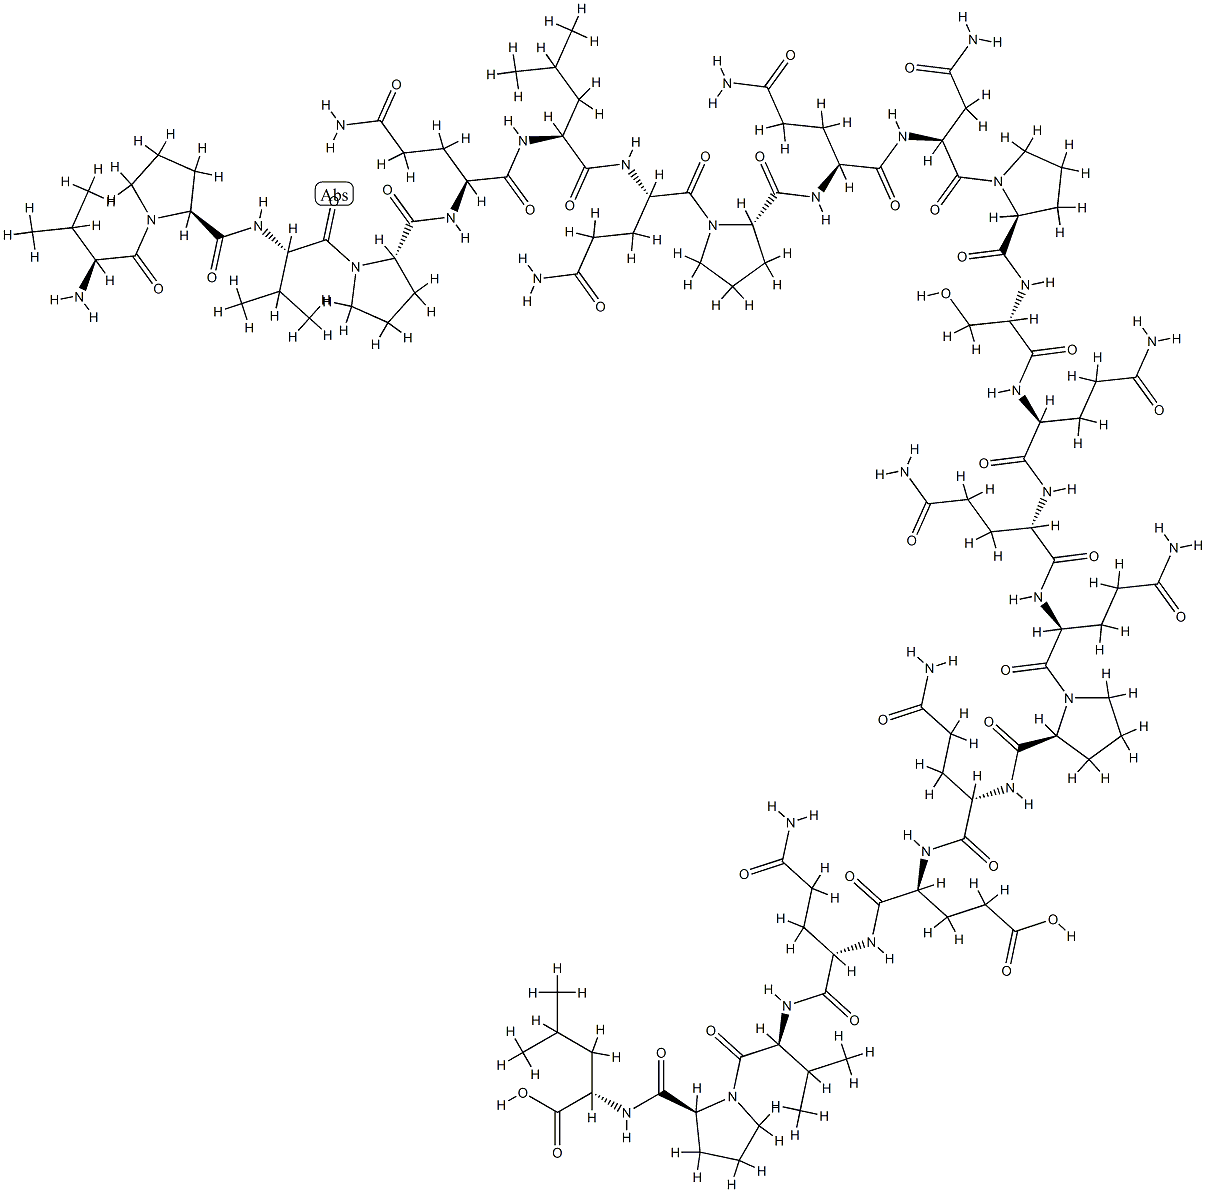 gliadin peptide CT-1